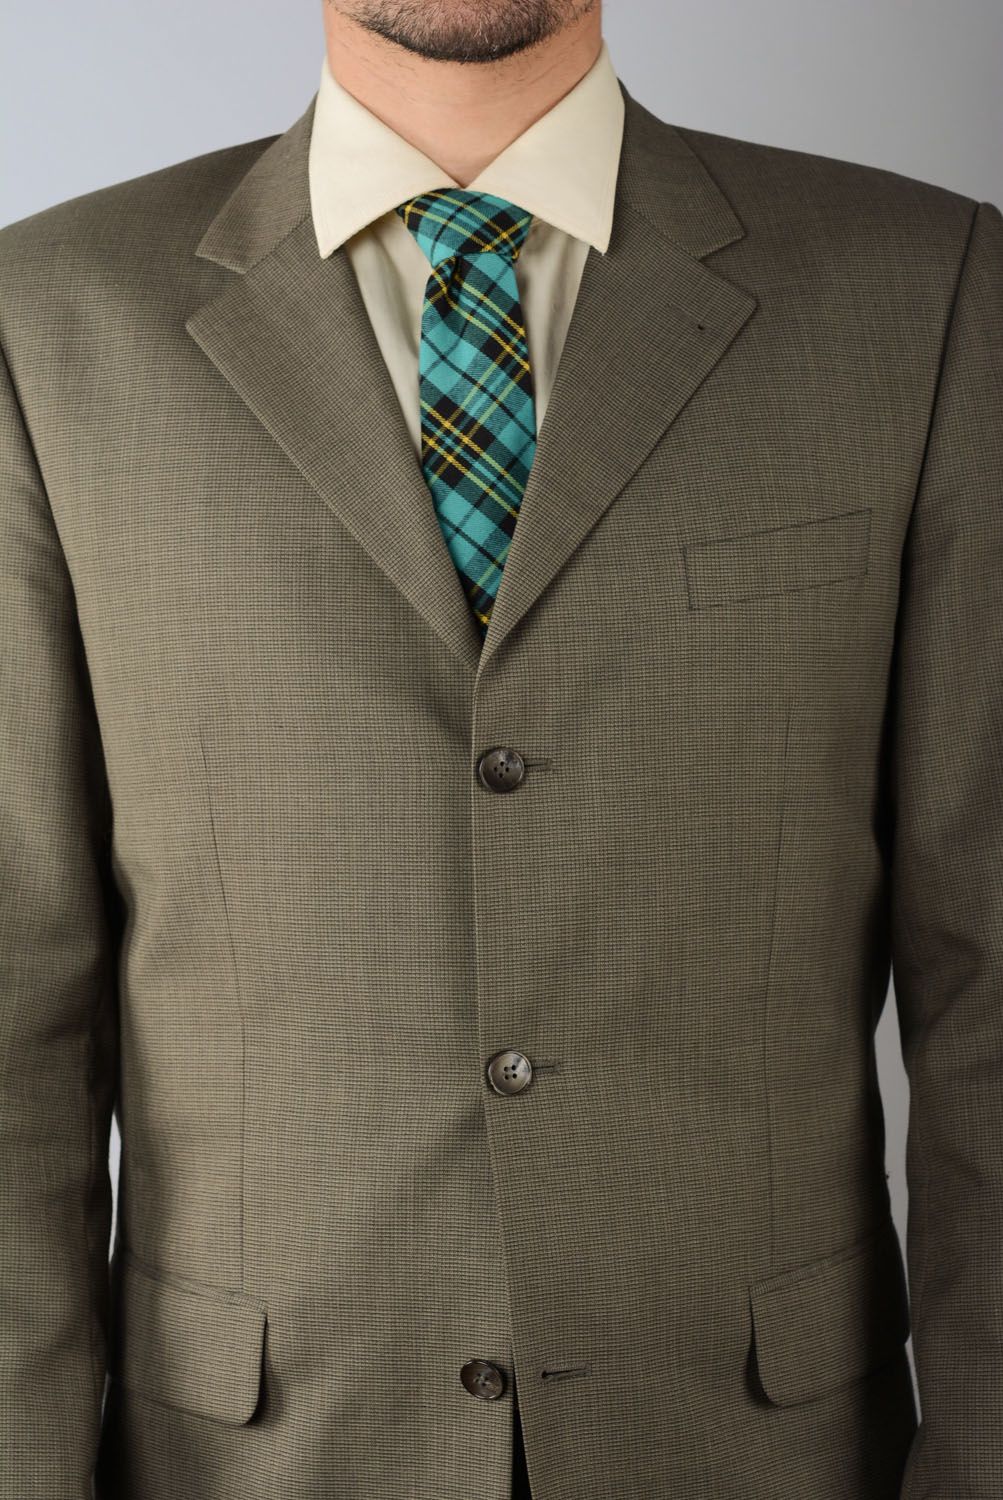 Cravate en tweed turquoise faite main photo 4